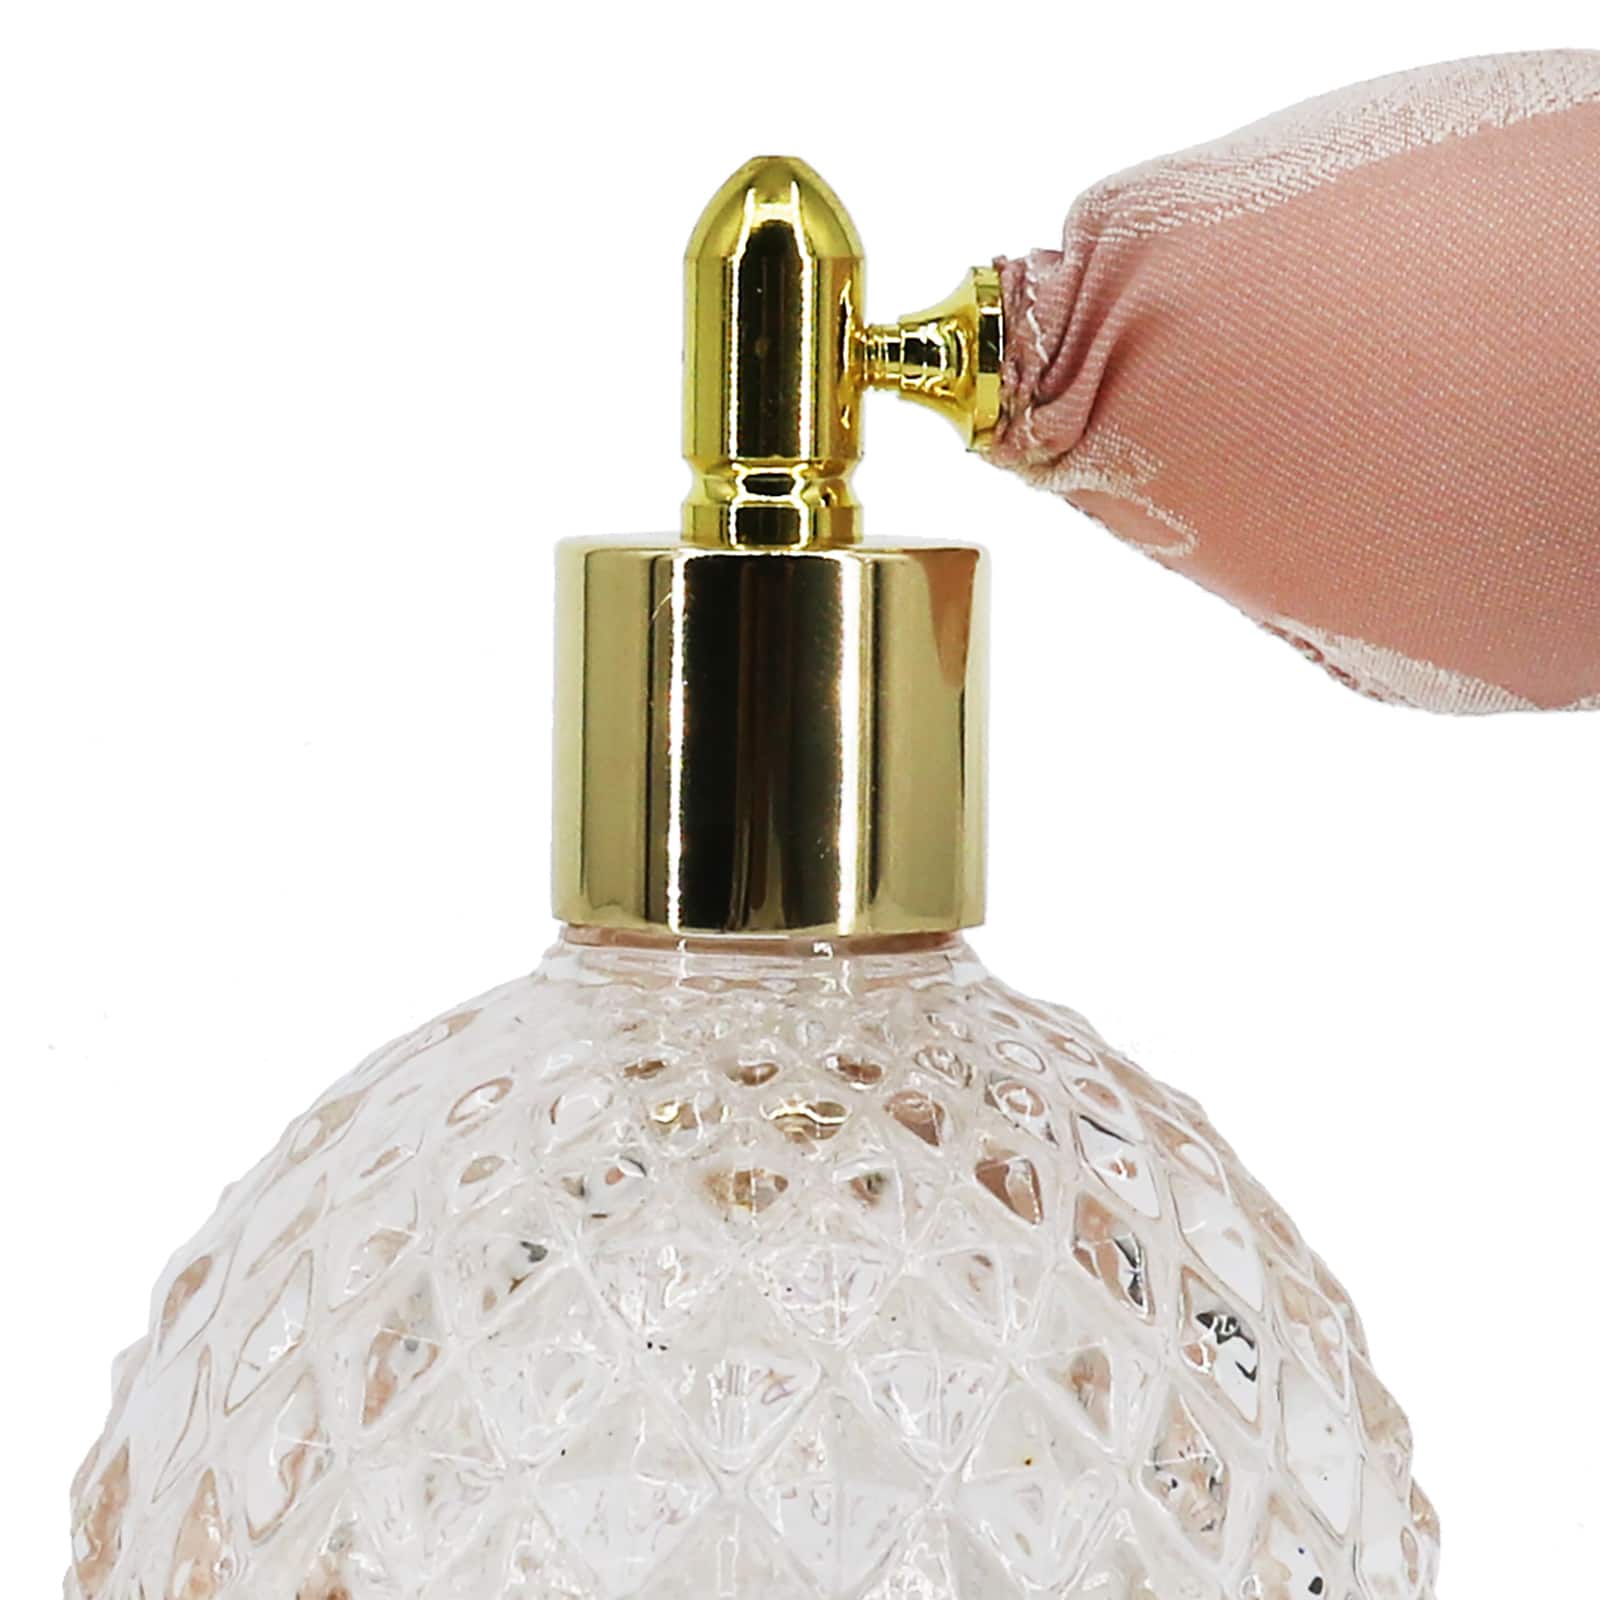 Assorted 3.4oz. Round Perfume Bottle by Ashland&#xAE;, 1pc.